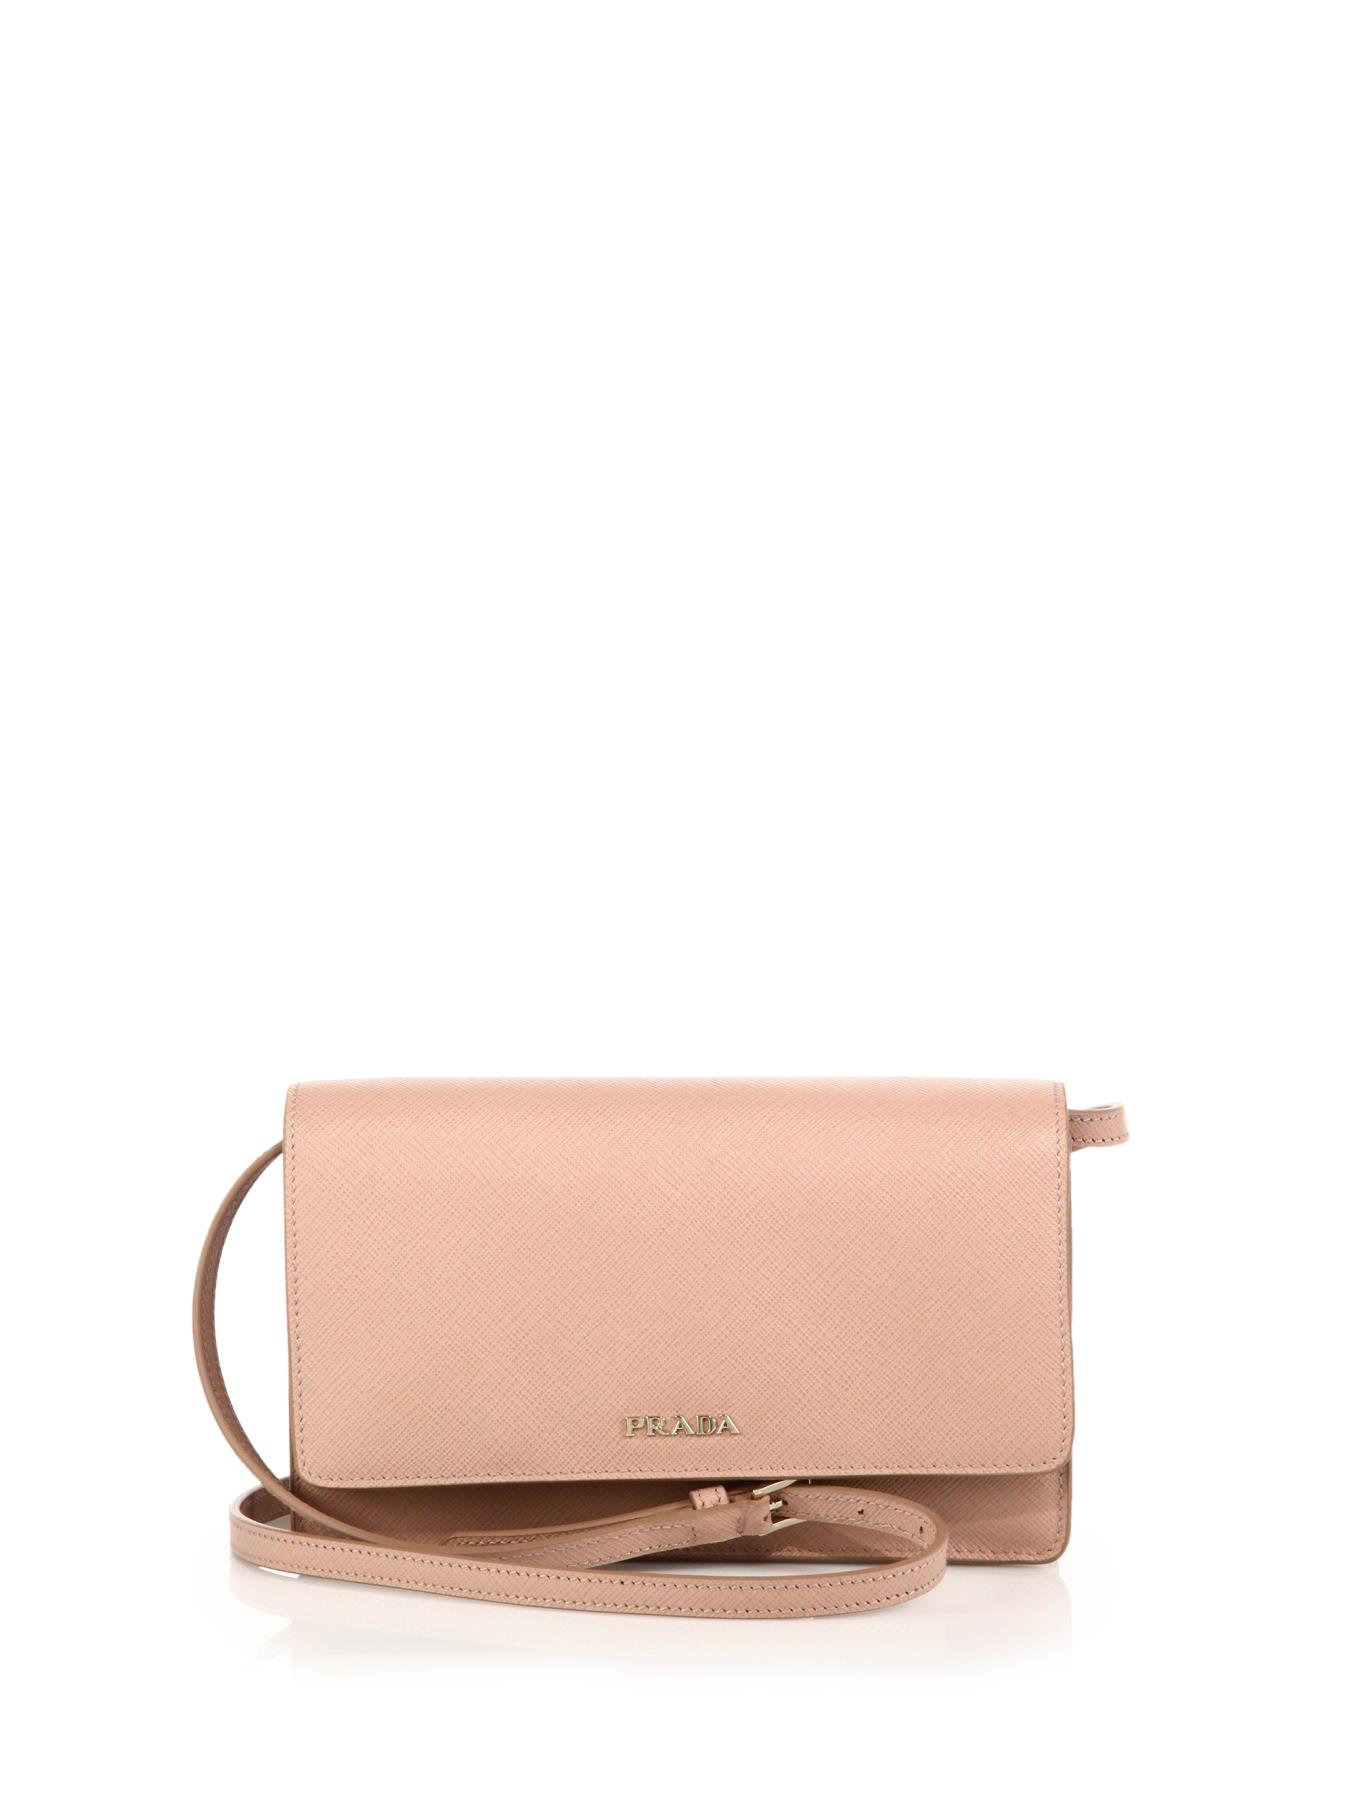 Prada Saffiano Lux Small Crossbody Bag in Pink (blush) | Lyst